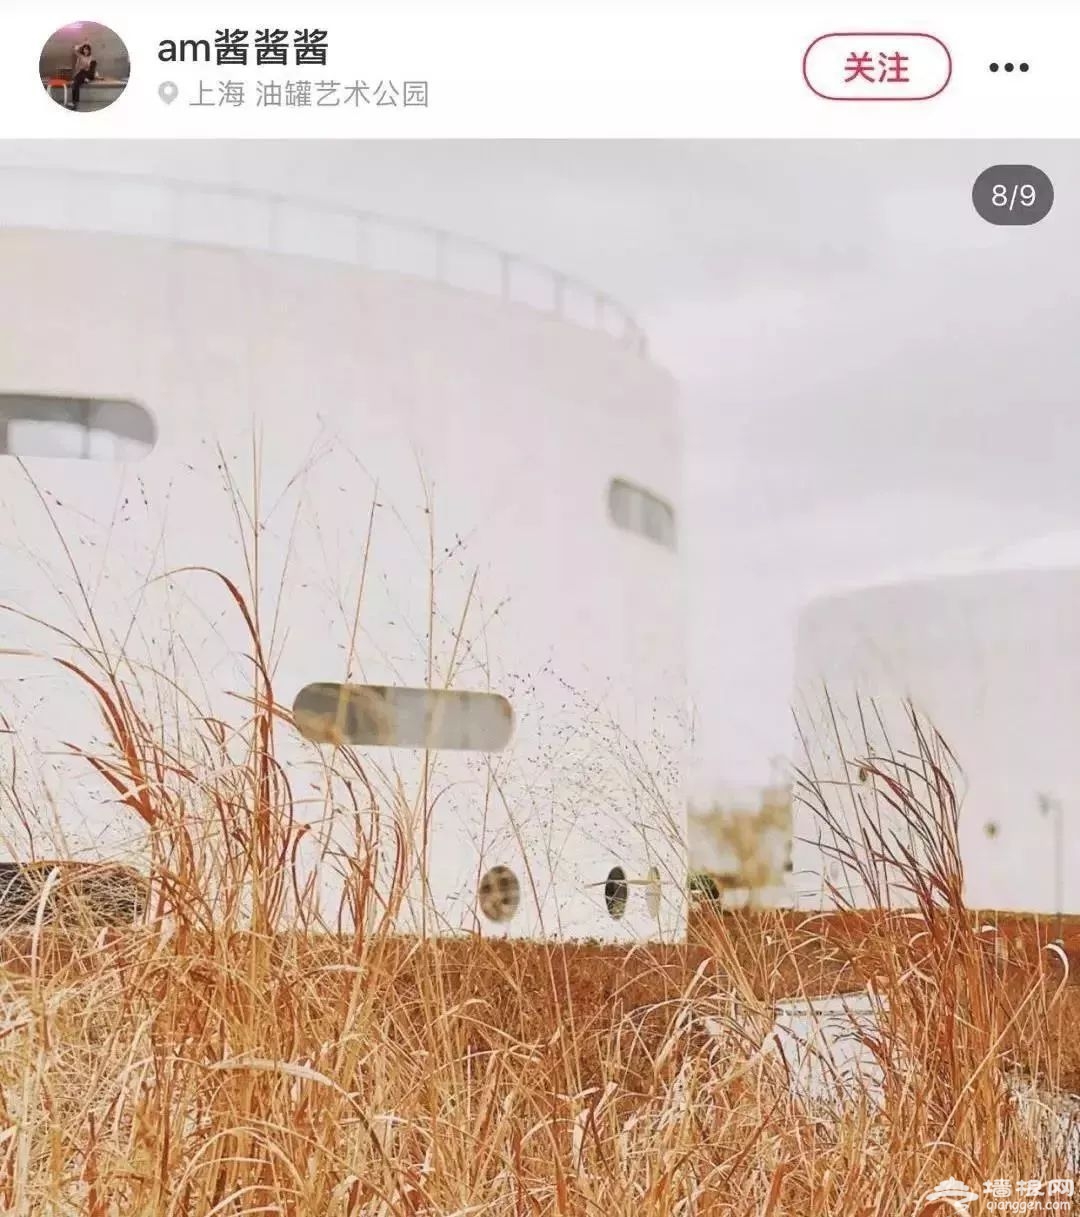 上海油罐艺术中心3月23日起对公众开放（地址+开放时间）[墙根网]